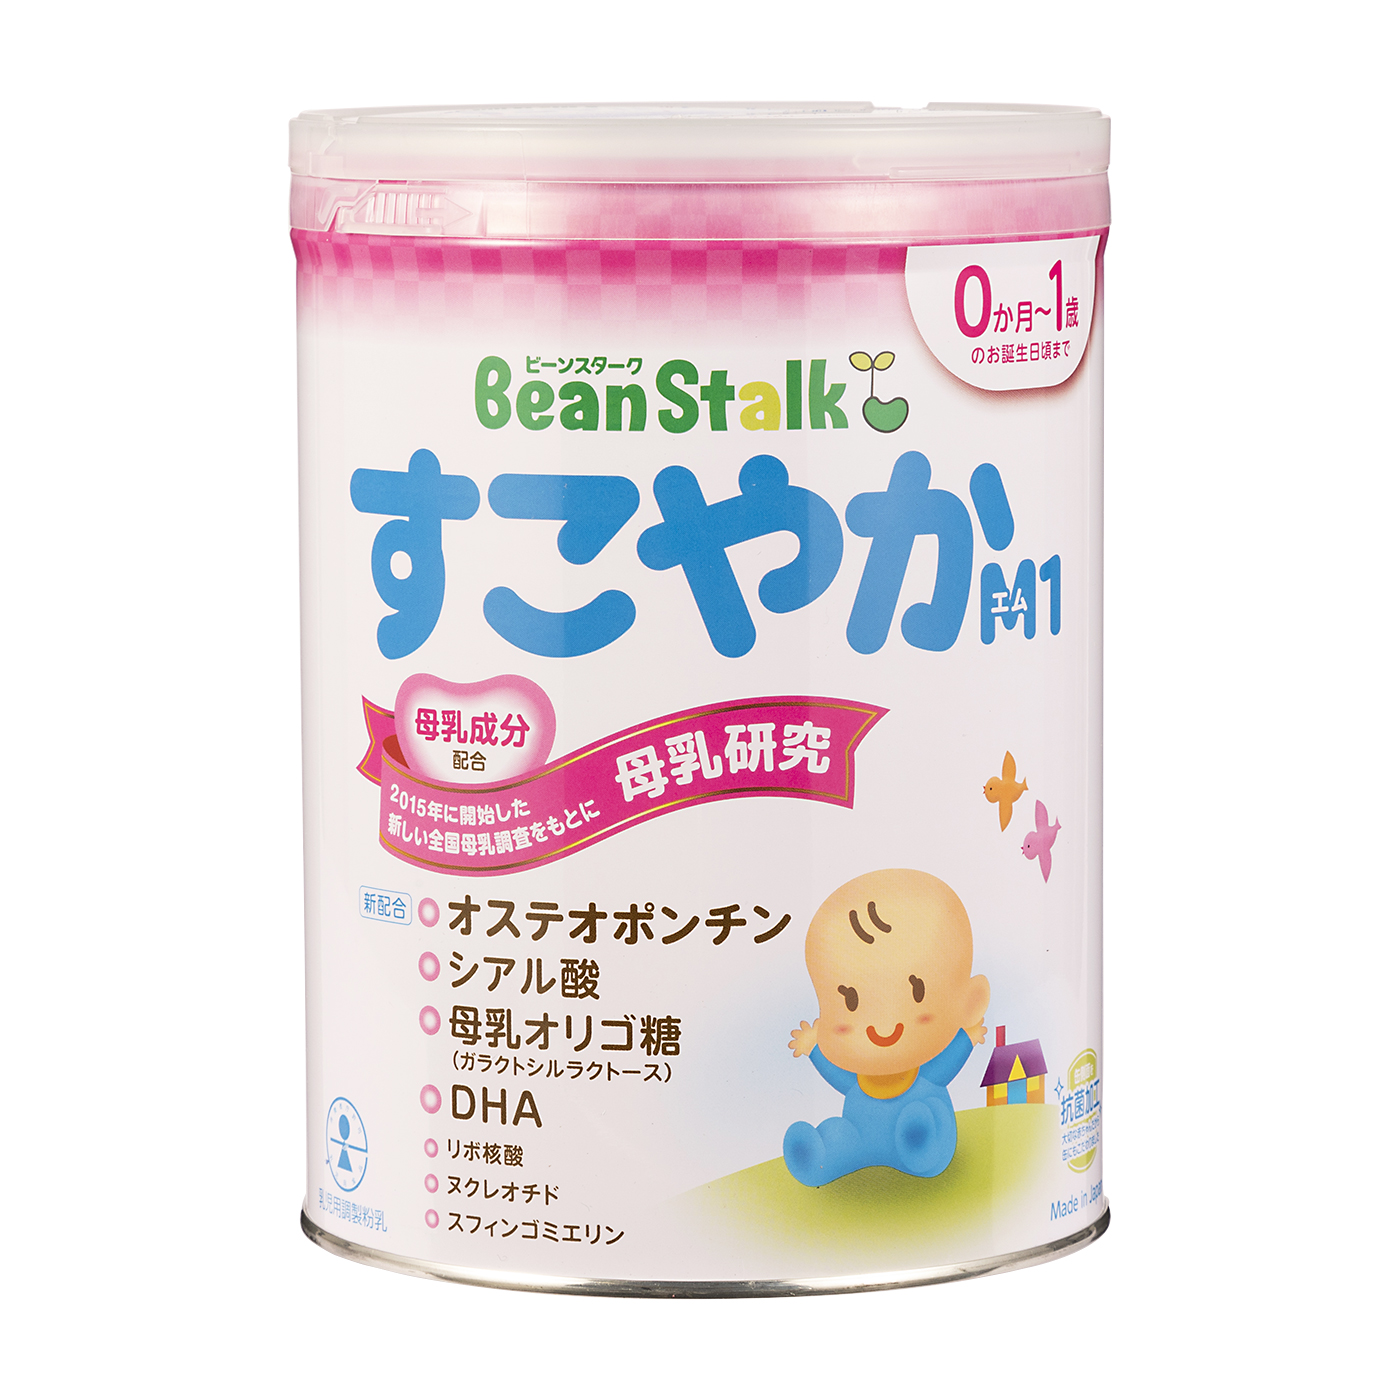 ぐんぐん 300㌘ 2缶セット - ミルク